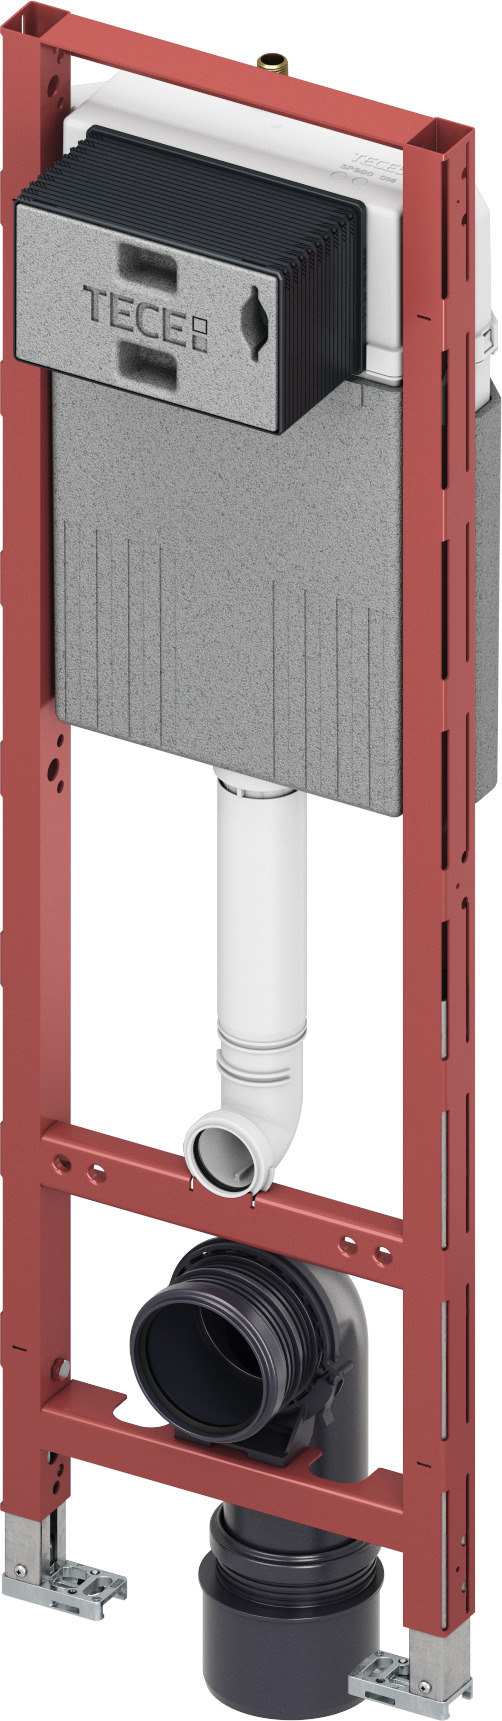 Obrázek TECE WC modul TECEprofil s nádržkou Compact 320, instalační výška 1120 mm #9300600